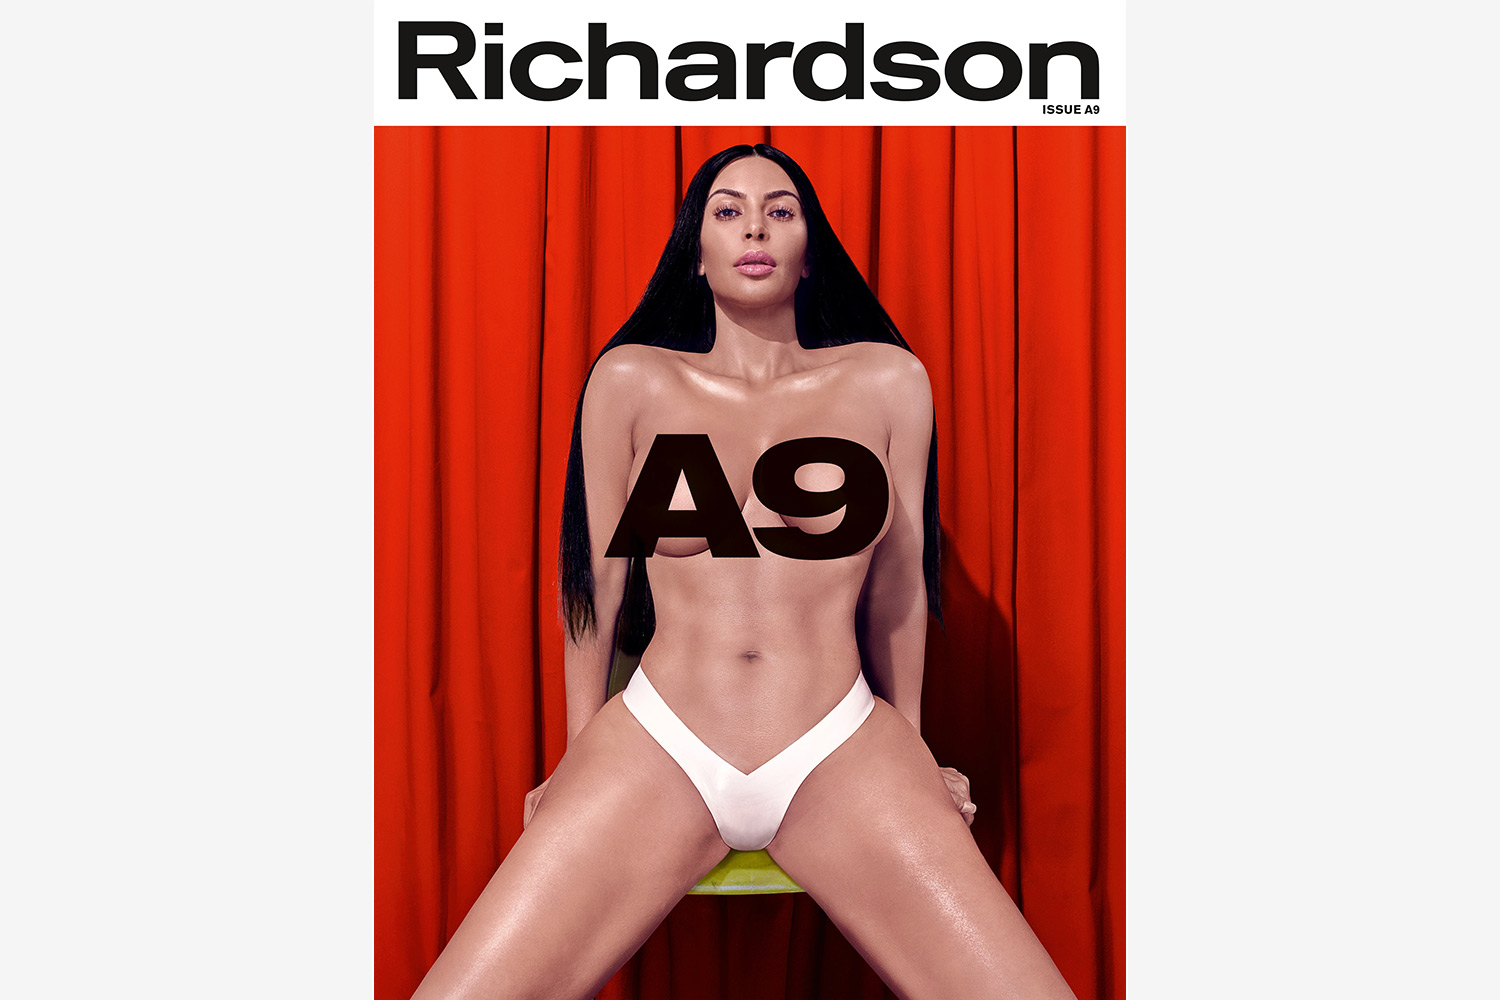 kim kardashian richardson a9 cover story